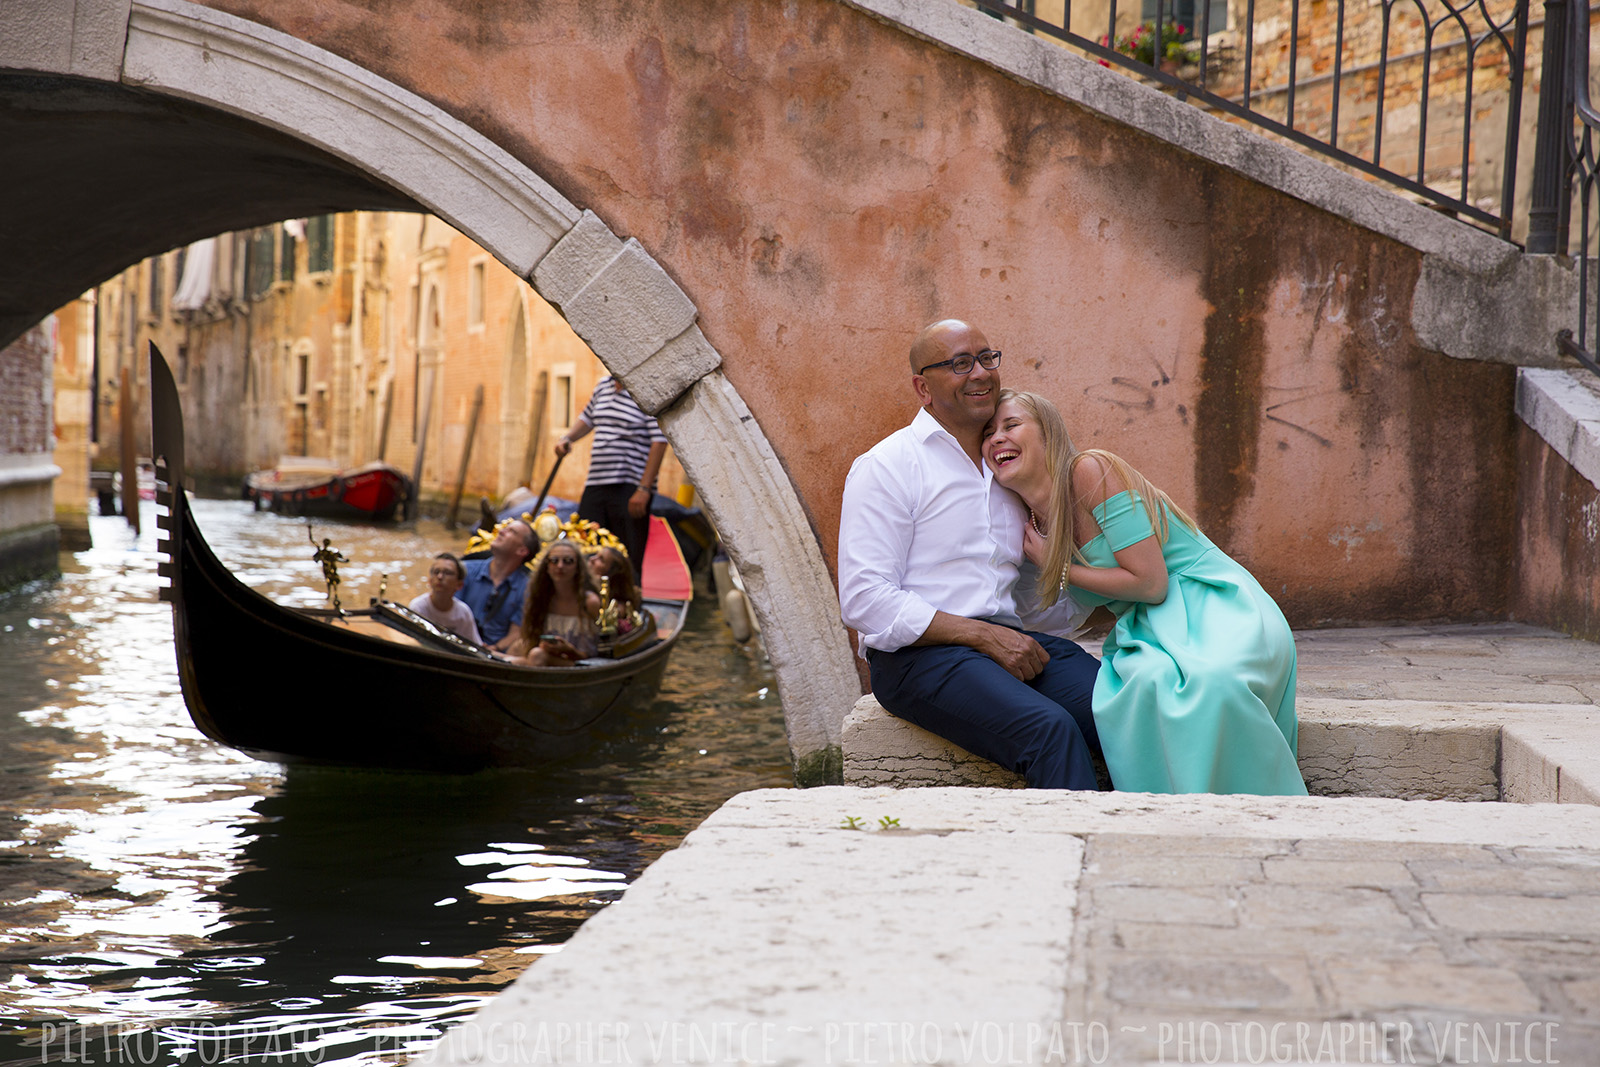 Fotografo a Venezia per un servizio foto vacanza